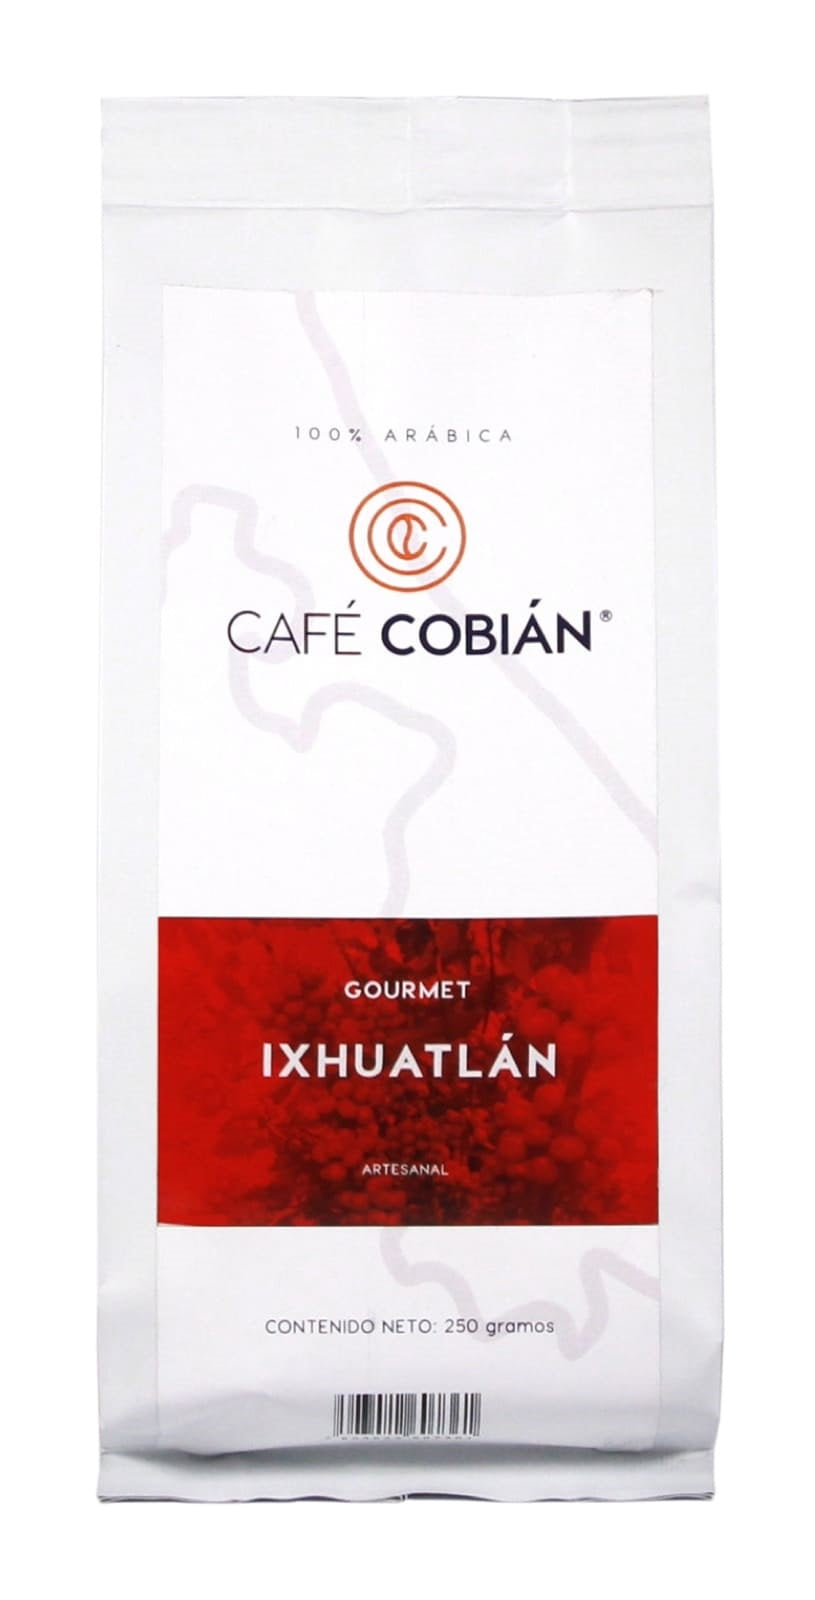 Cafe Gourmet de Ixhuatlán del Café